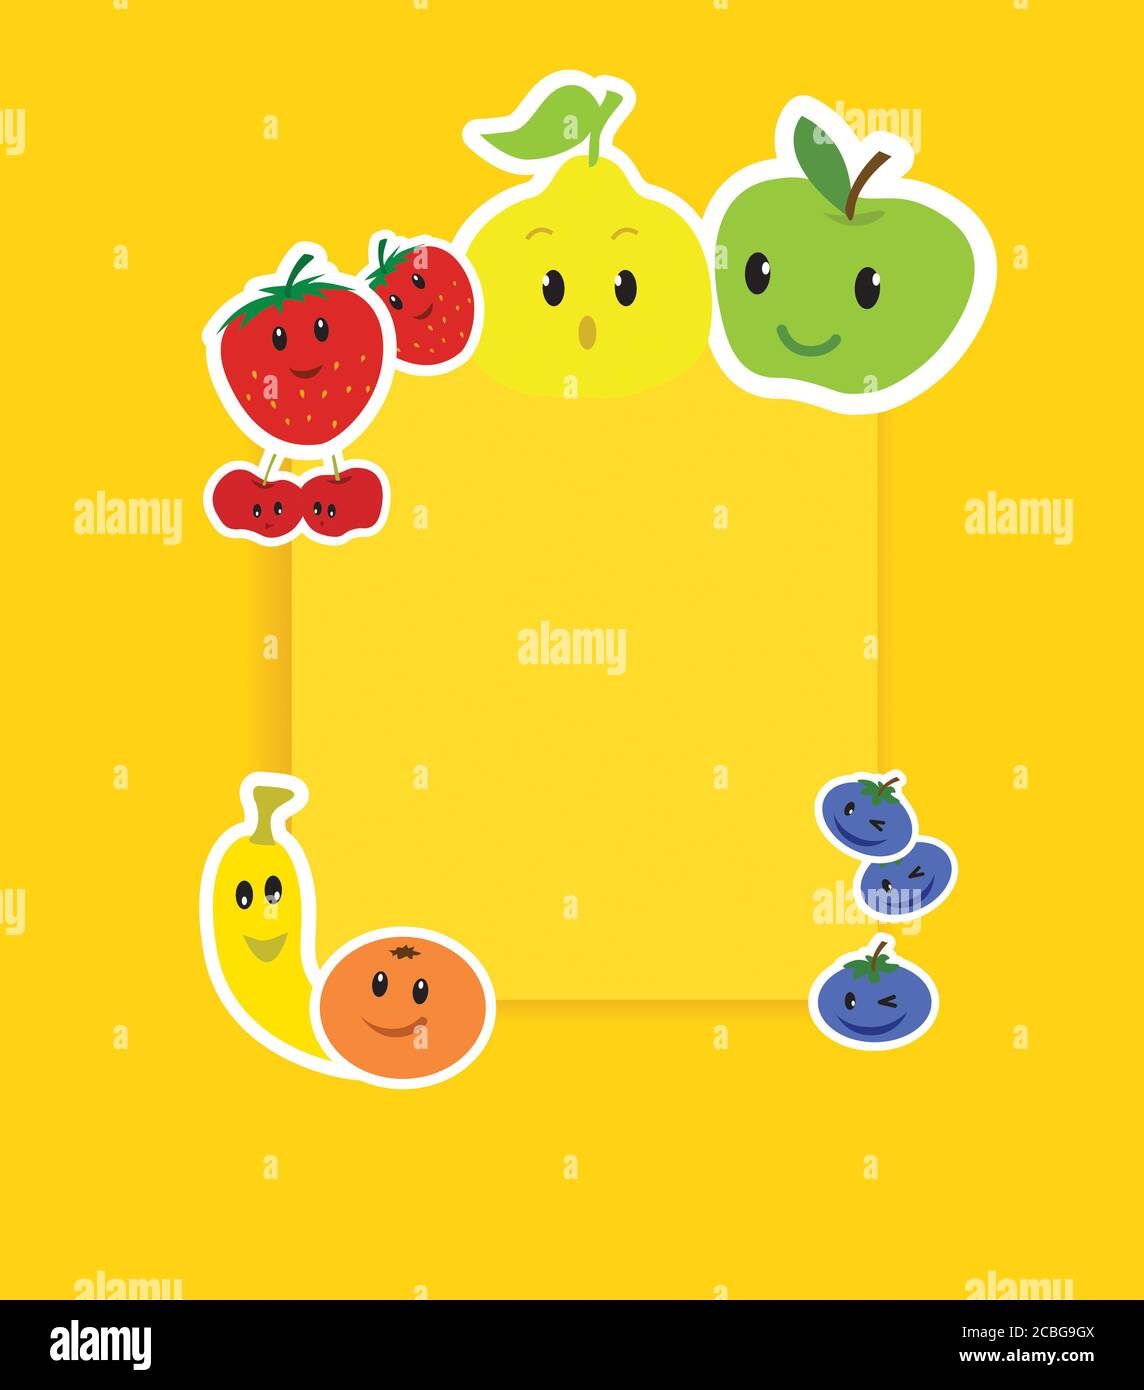 Dessin animé vecteur kawaii fruits mignons et drôles, personnages sur une affiche sur fond jaune avec espace de copie Banque D'Images